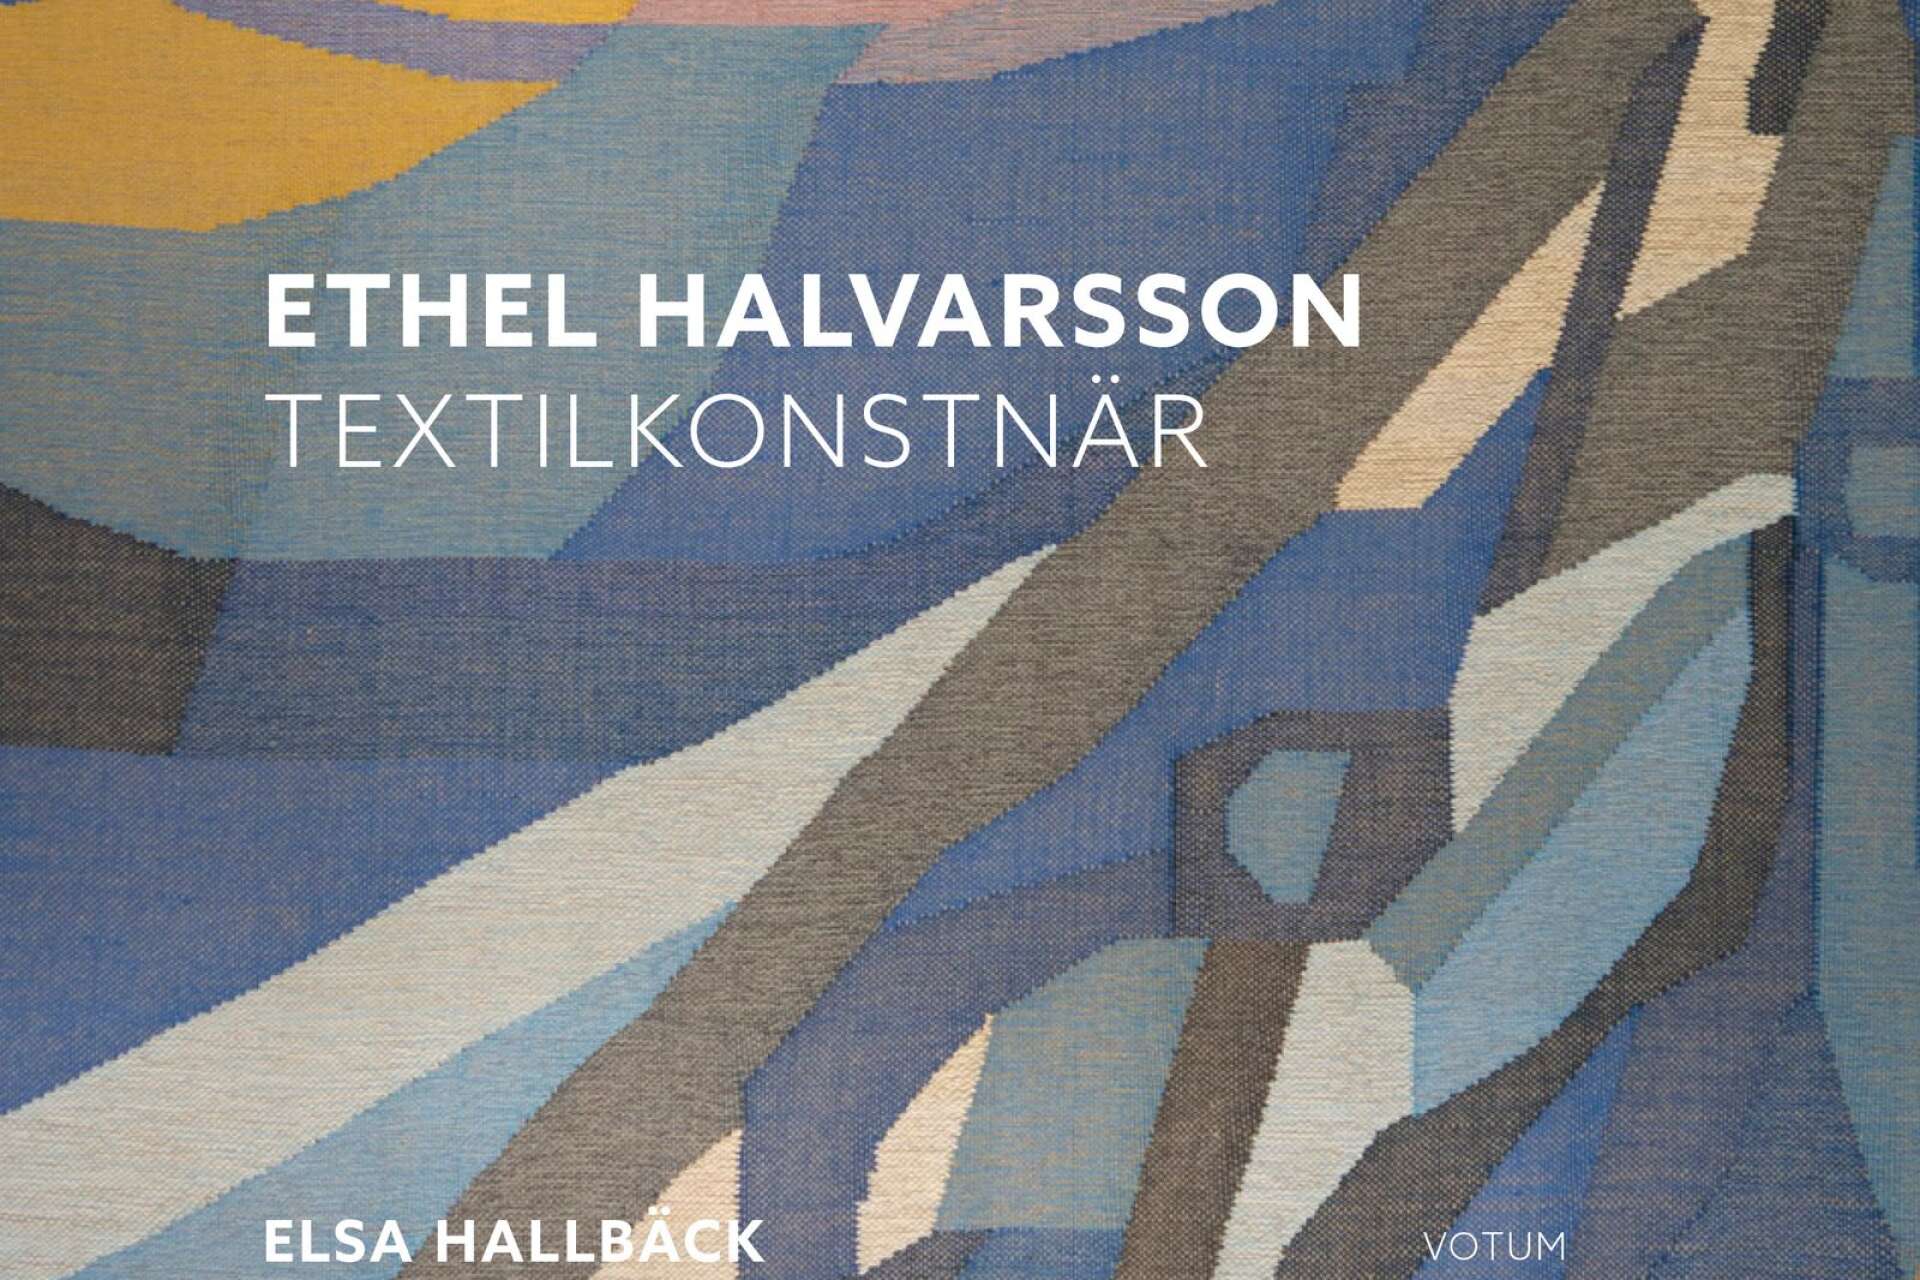 Elsa Hallbäcks bok har ett textilt omslag där ett av Ethel Halvarssons verk blivit omslagsbild.